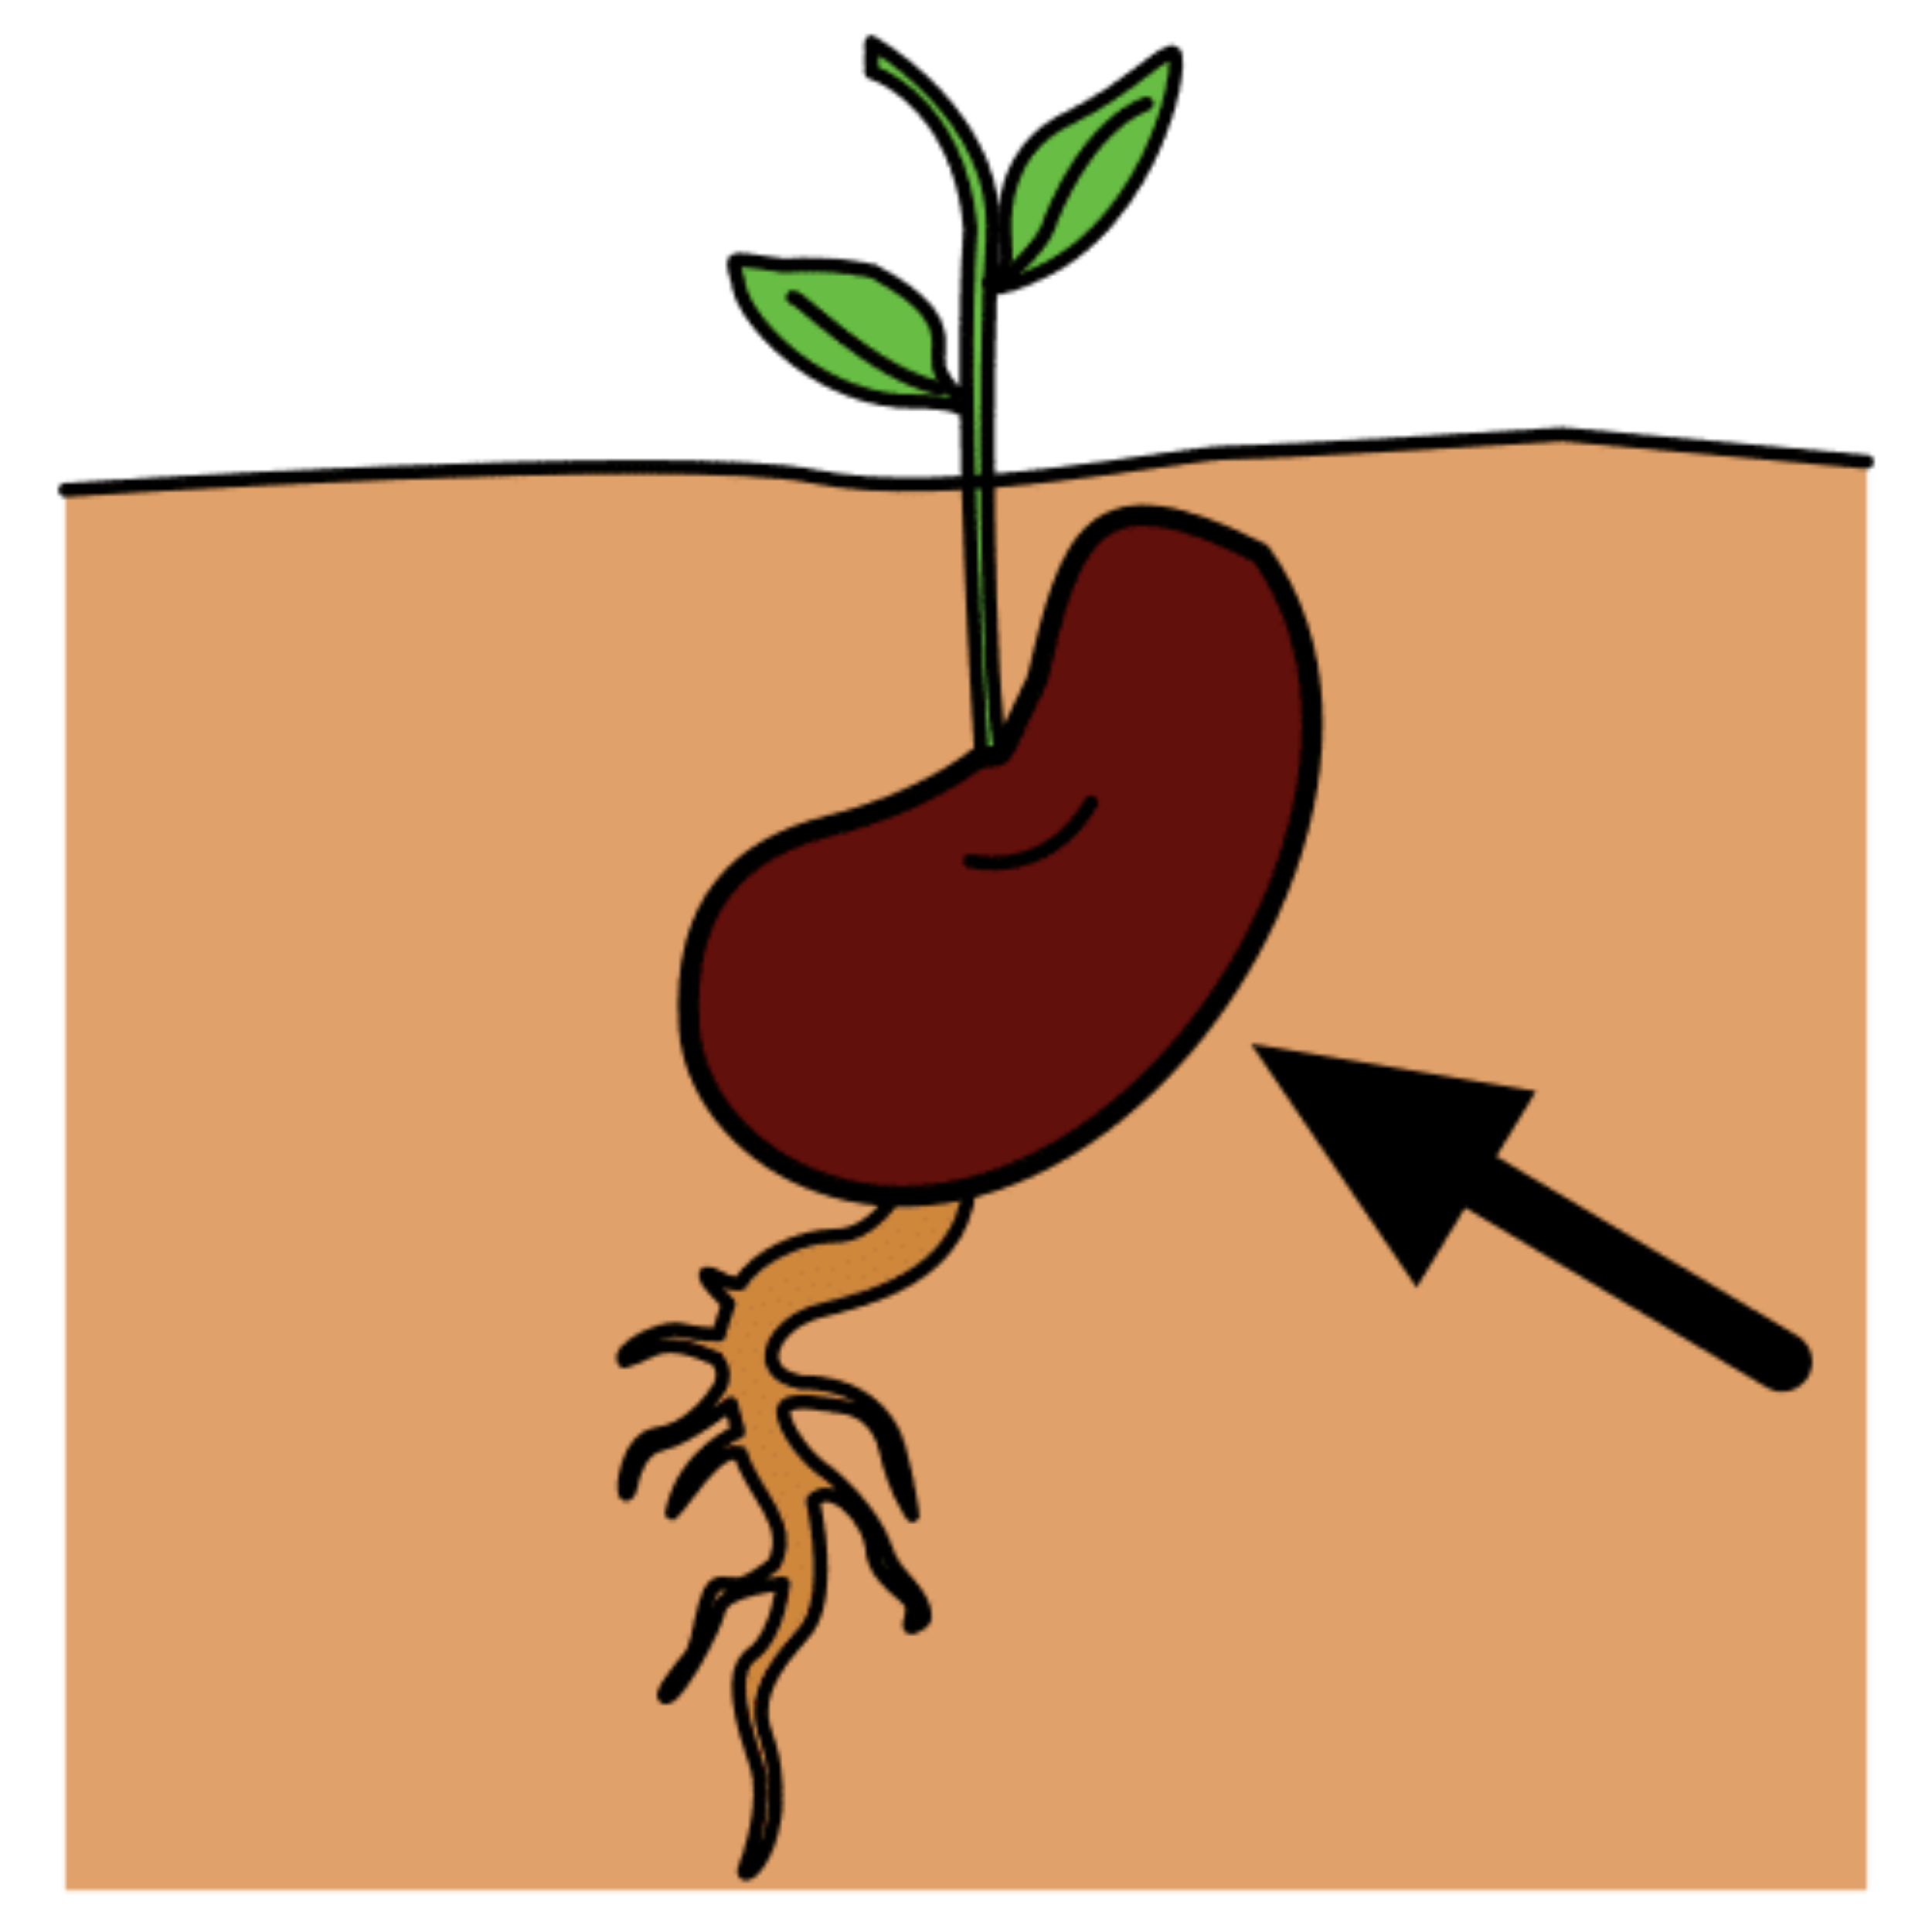 La imagen muestra una semilla germinando.